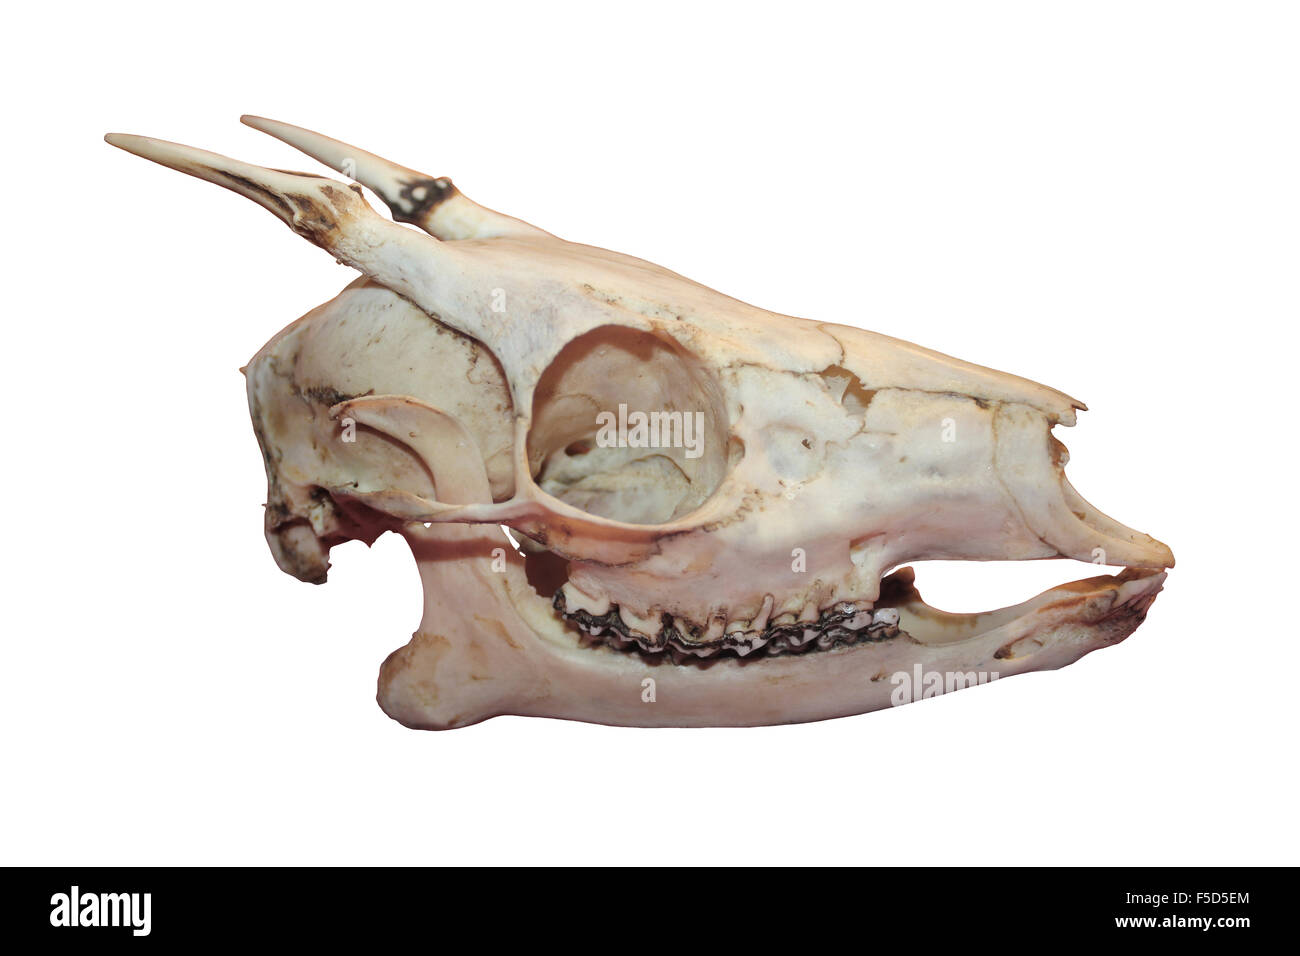 Il cranio del Nano Brocket Deer (Mazama chunyi) native di altipiani andini in Bolivia occidentale e sud-est del Perù. Foto Stock